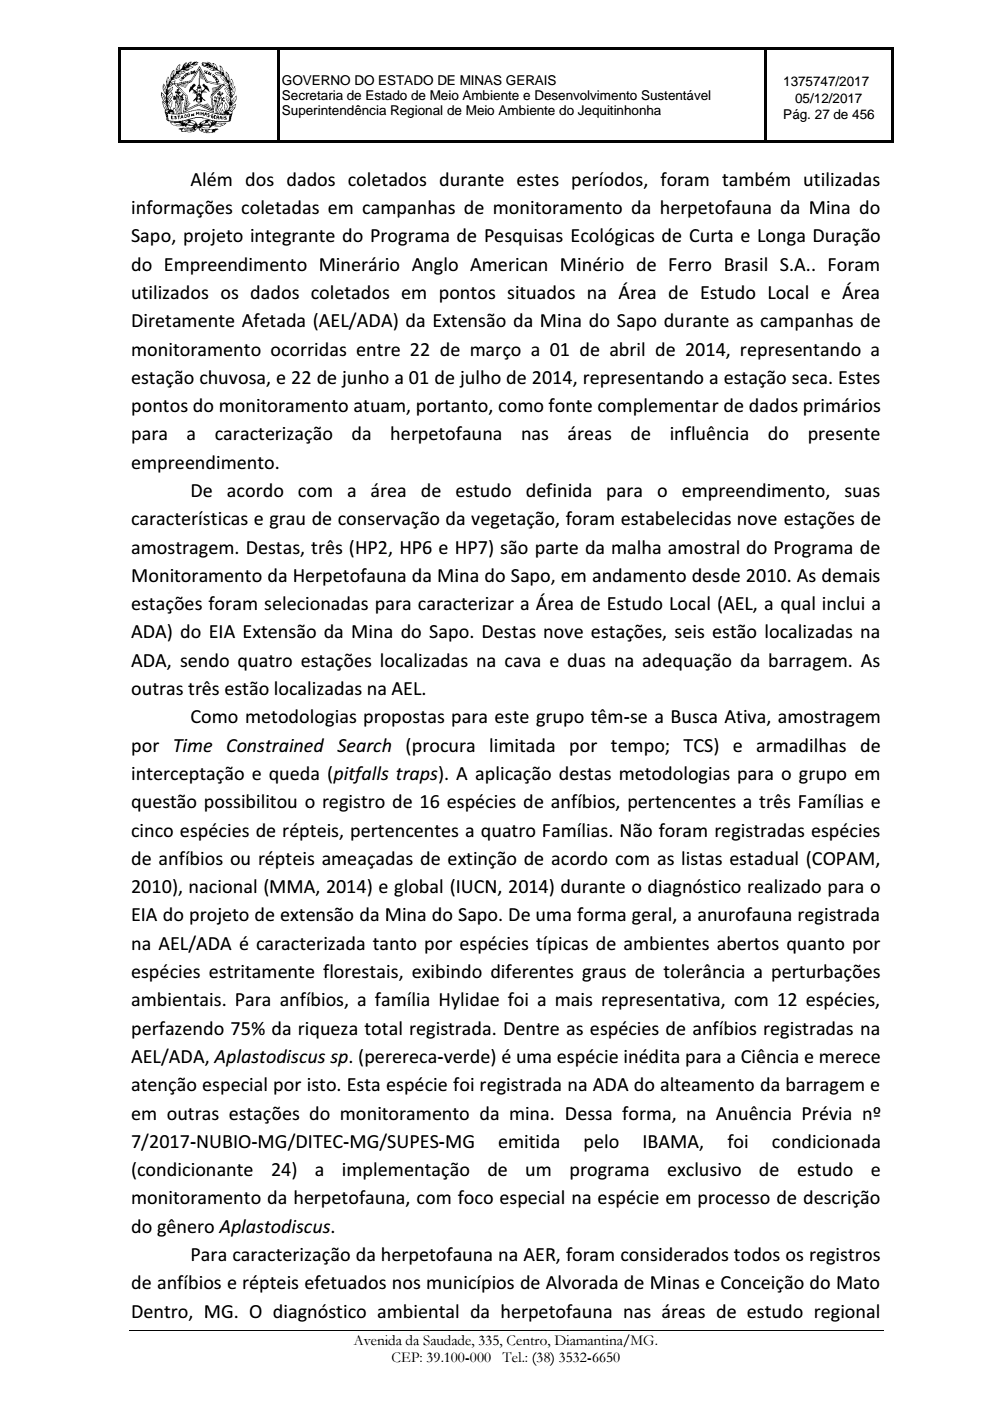 Page 27 from Parecer único da Secretaria de estado de Meio Ambiente e Desenvolvimento Sustentável (SEMAD)